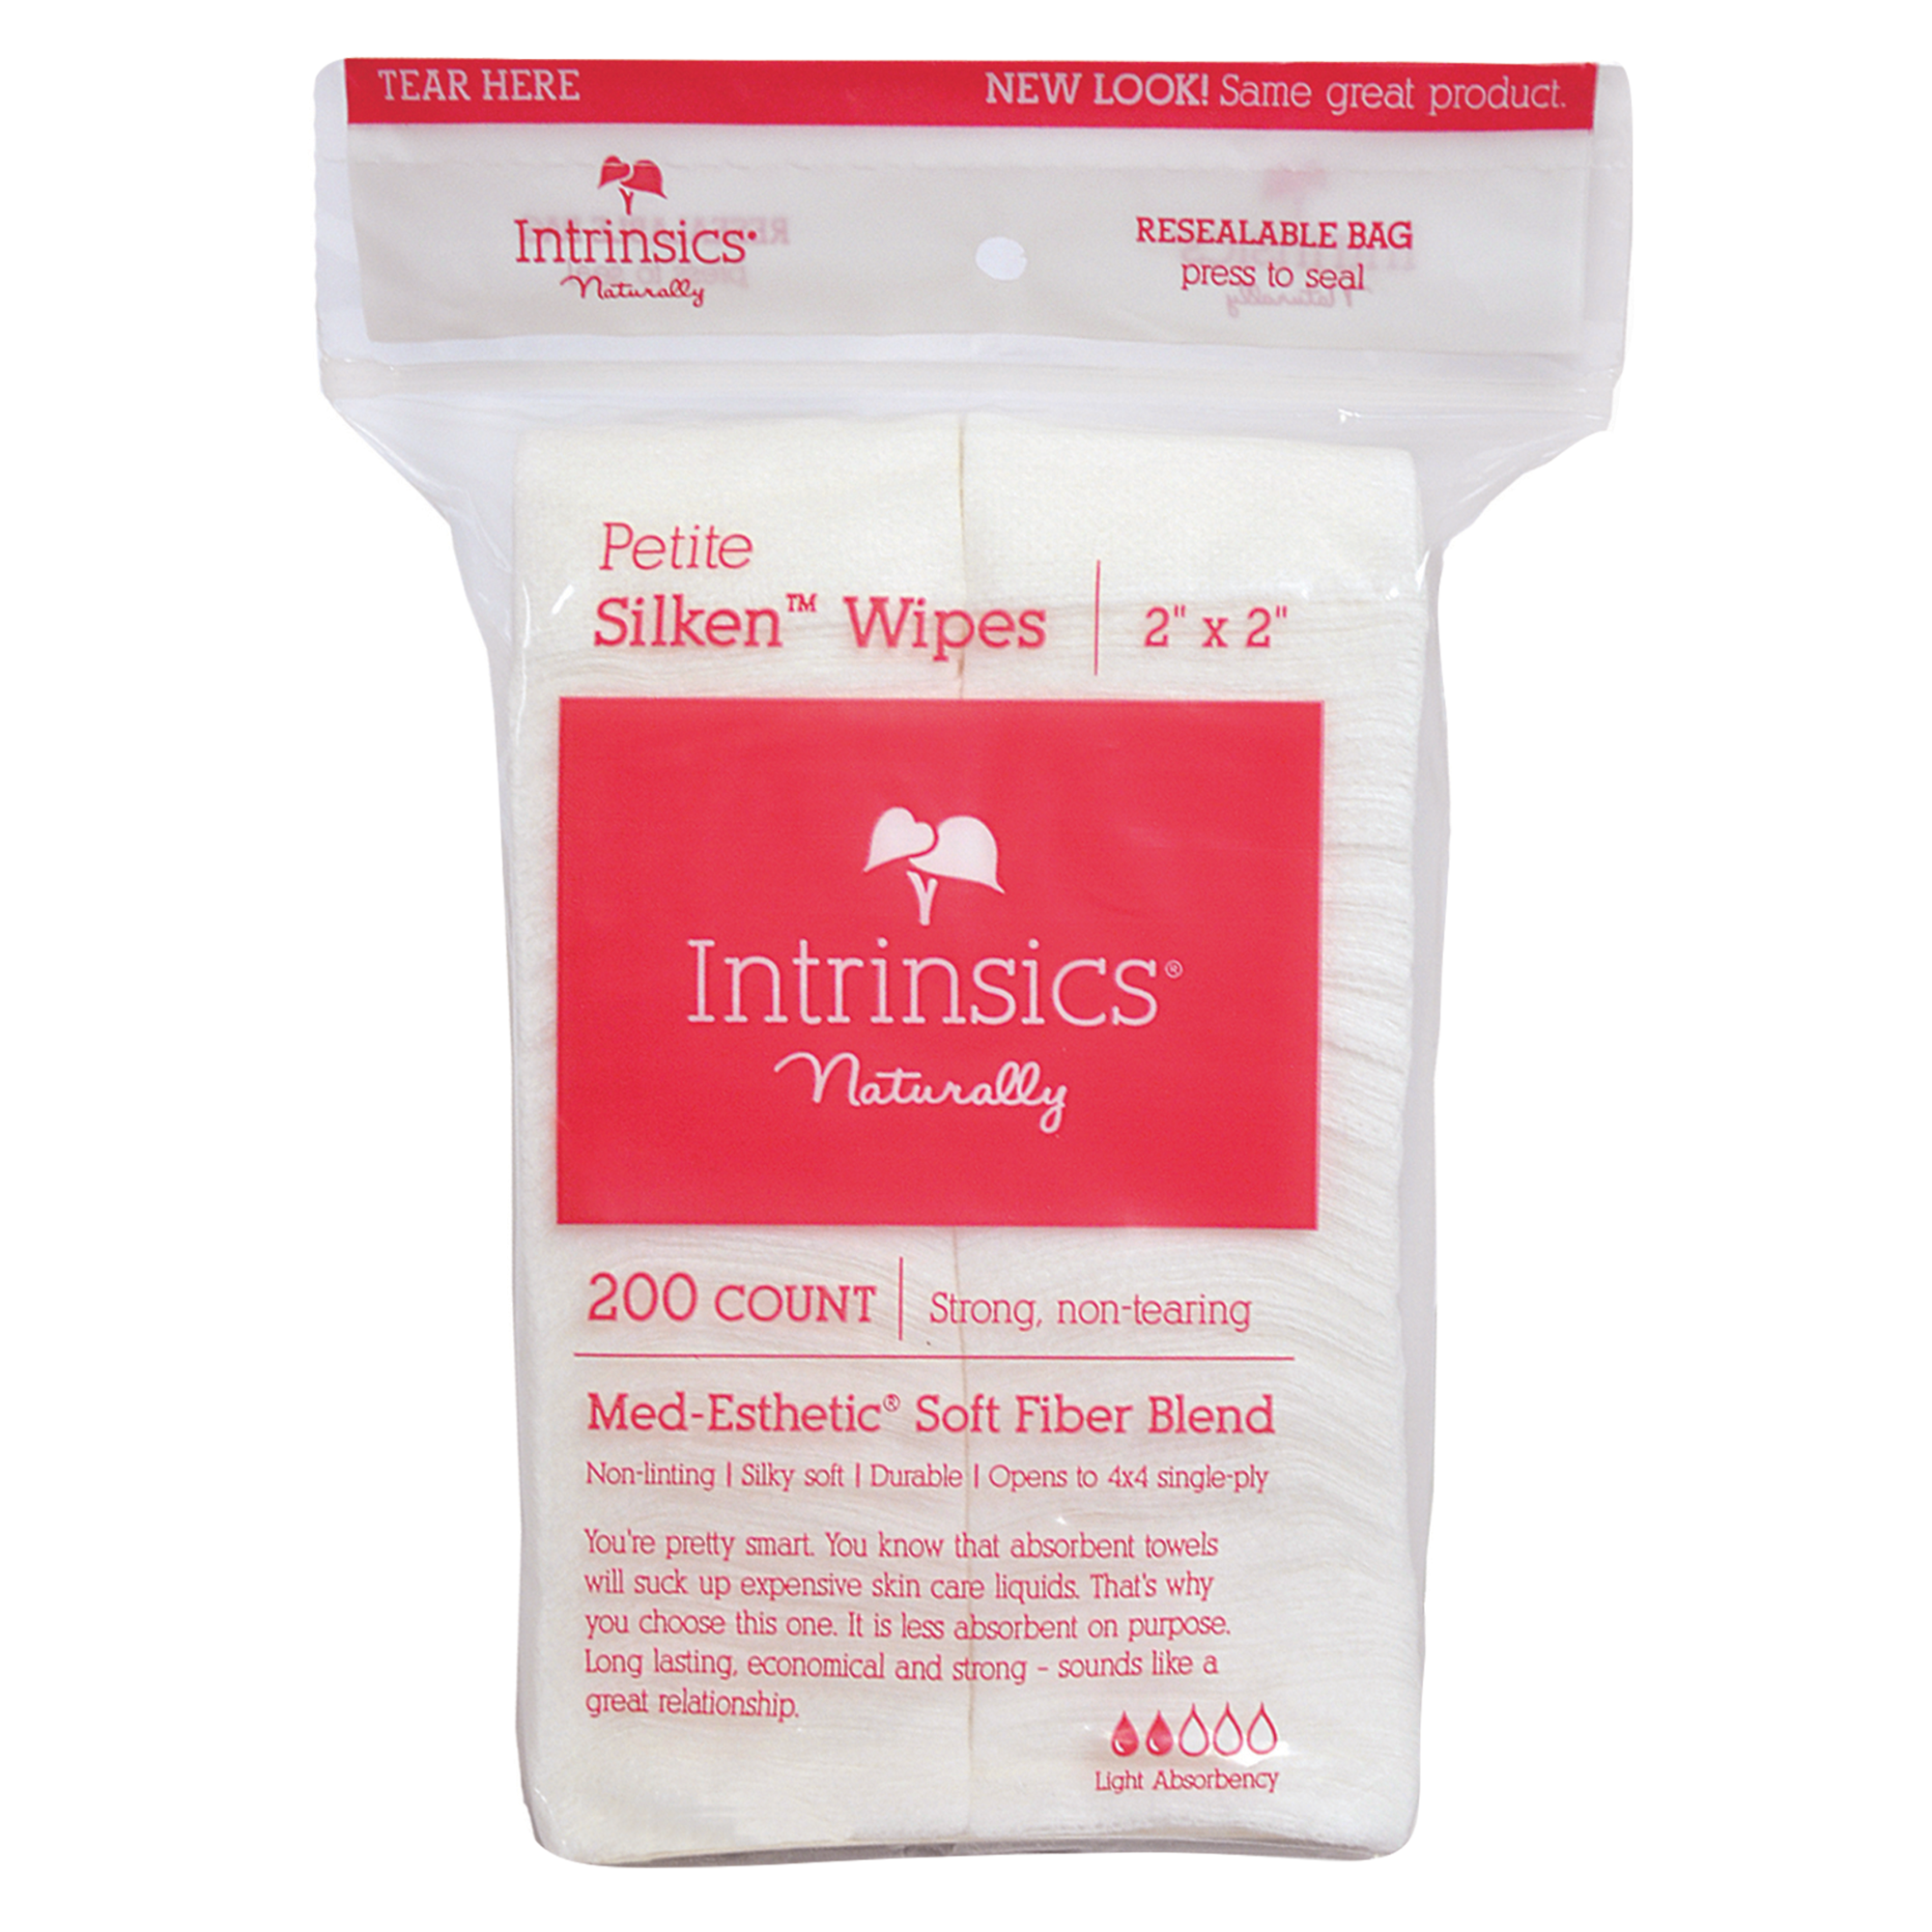 Silken™ Wipes - 2" x 2"